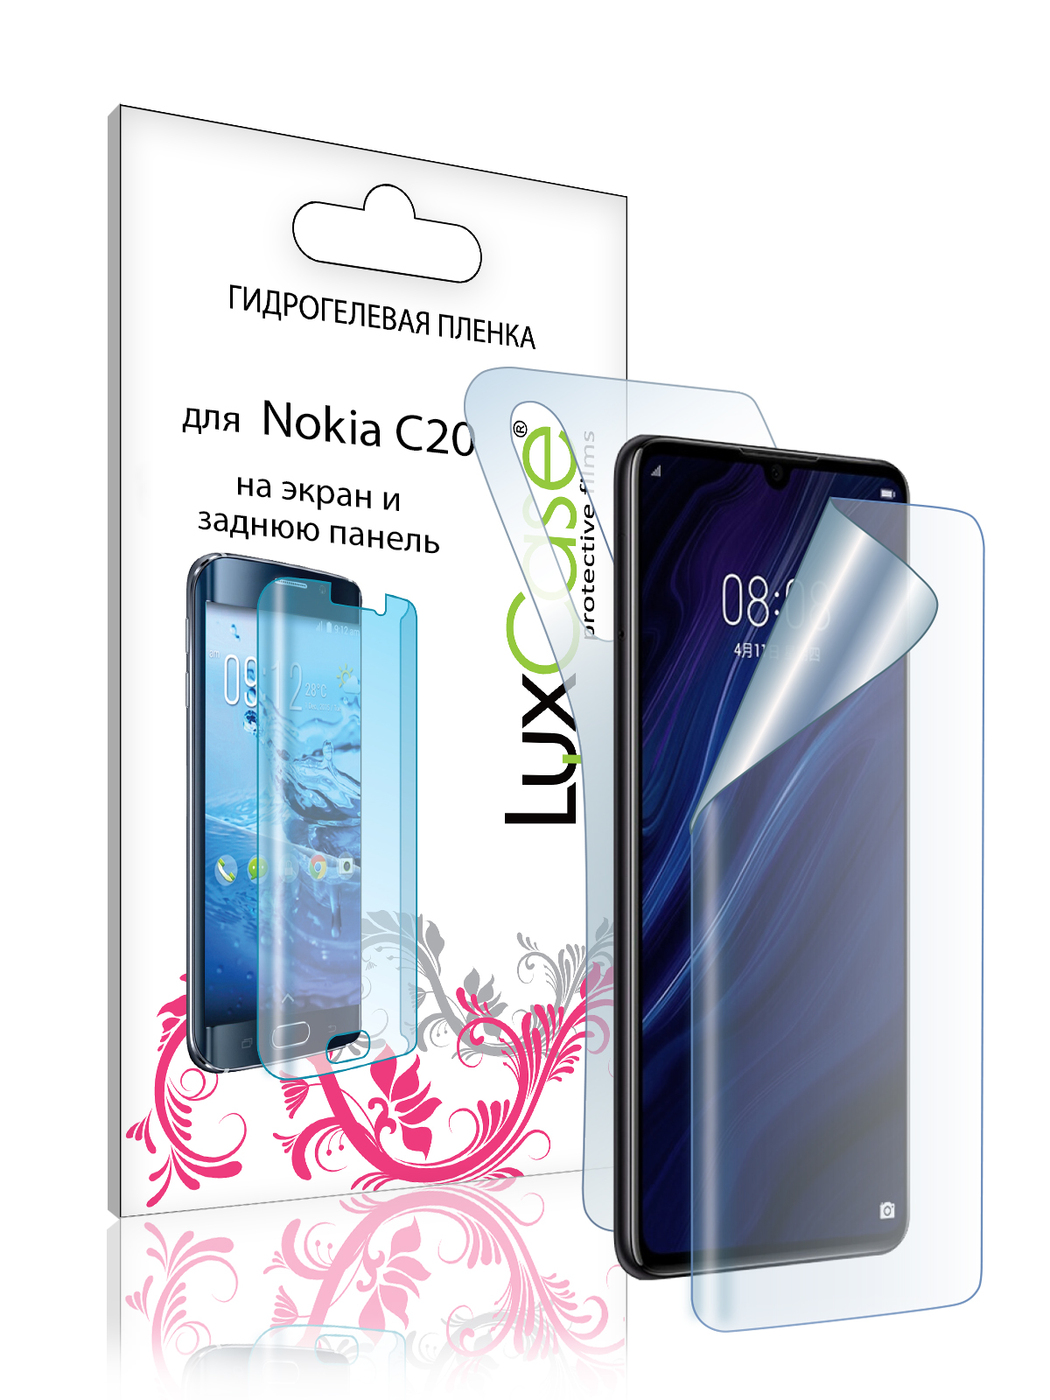 Пленка гидрогелевая LuxCase для Nokia C20 Front and Back Transparent 86388 гидрогелевая пленка с вырезом под камеру для нокиа с20 плюс nokia c20 plus